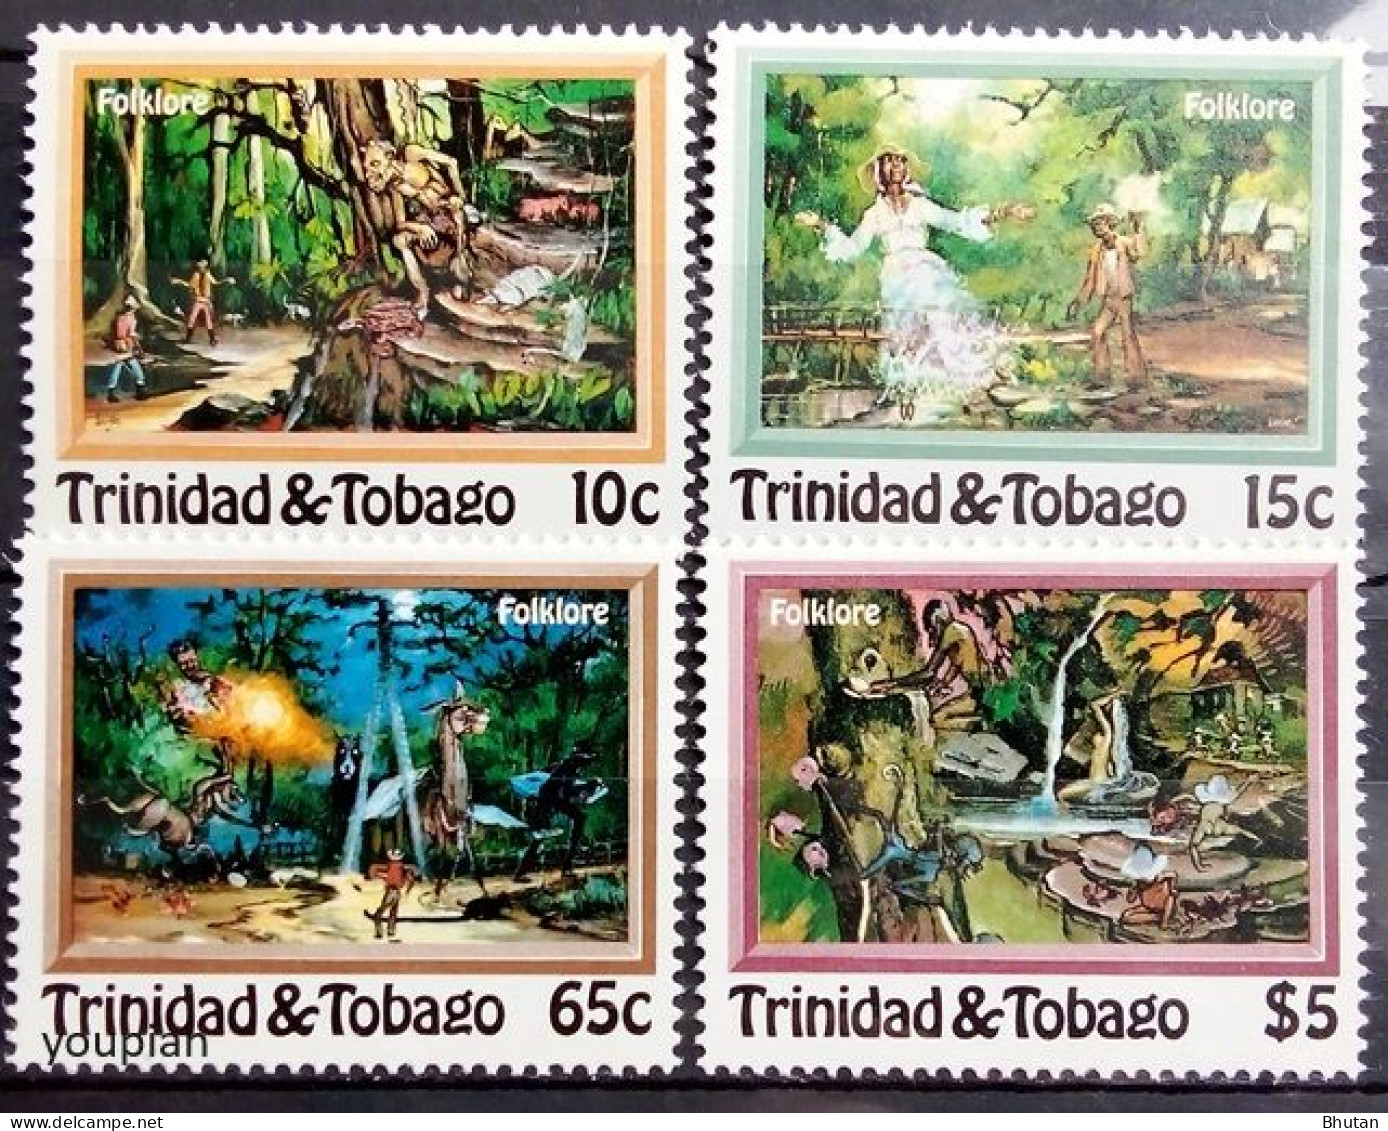 Trinidad And Tobago 1982, Folklore, MNH Stamps Set - Trinidad Y Tobago (1962-...)